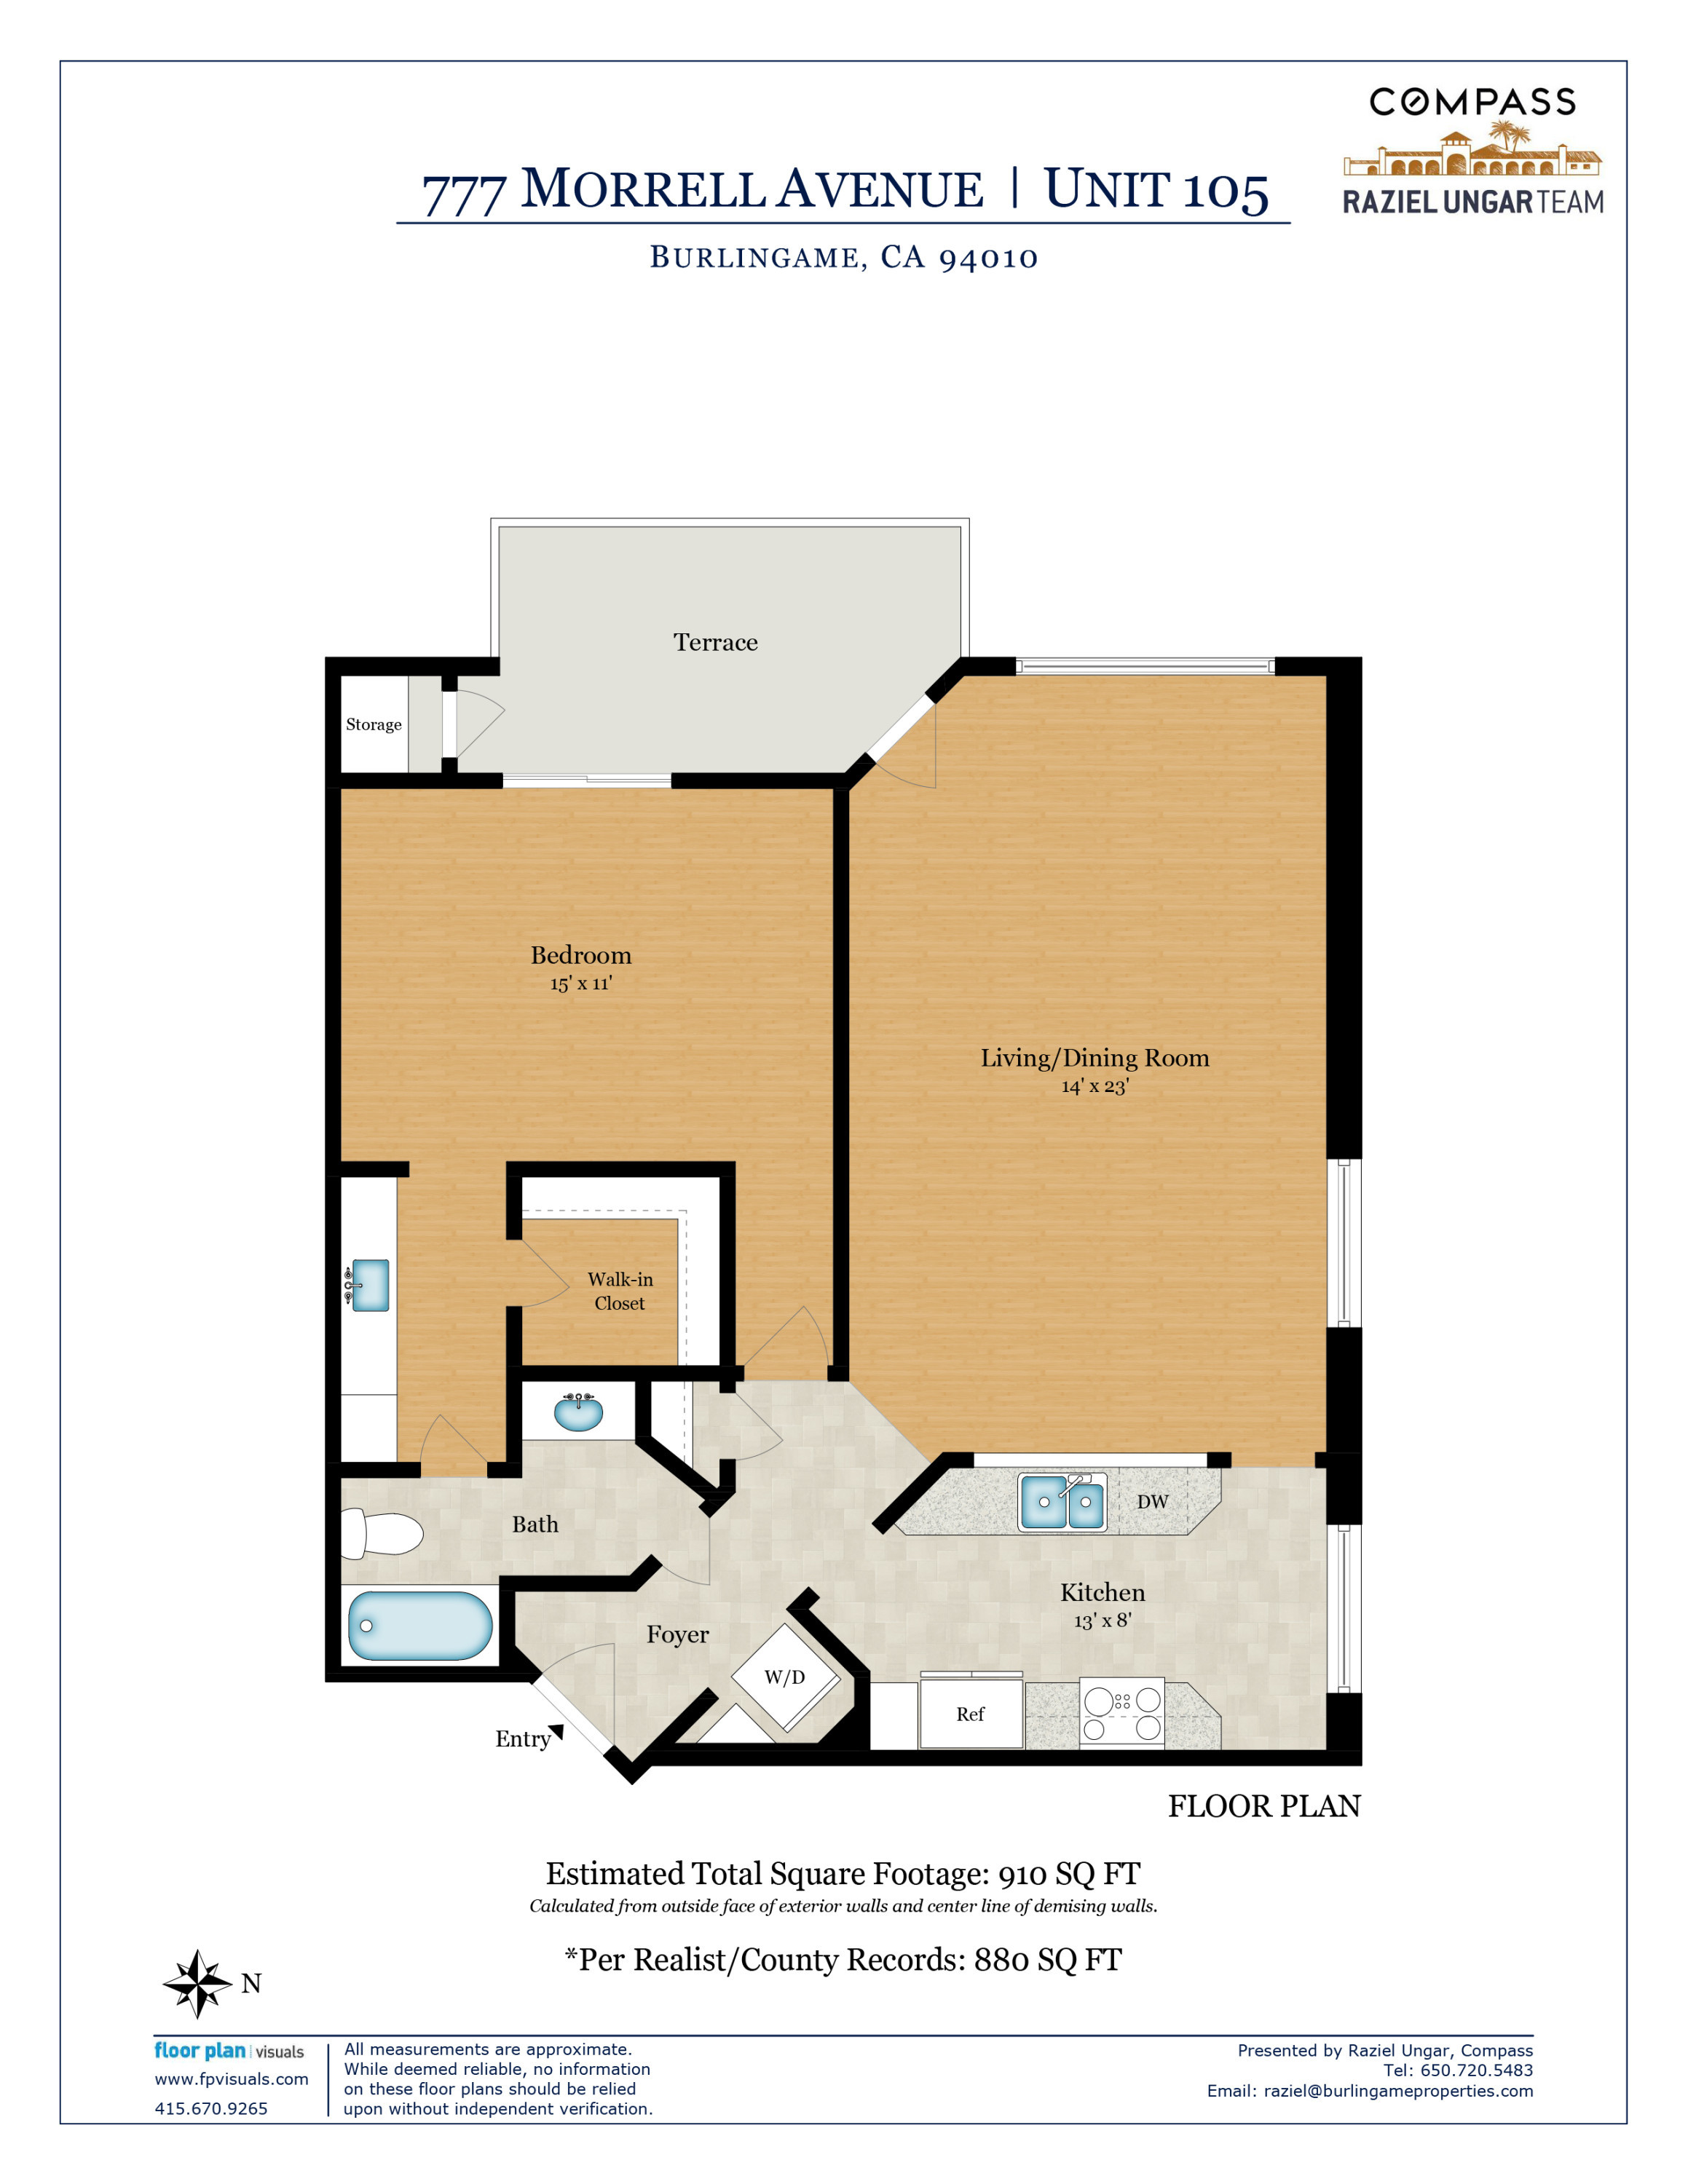 777 Morrell Ave floor plan